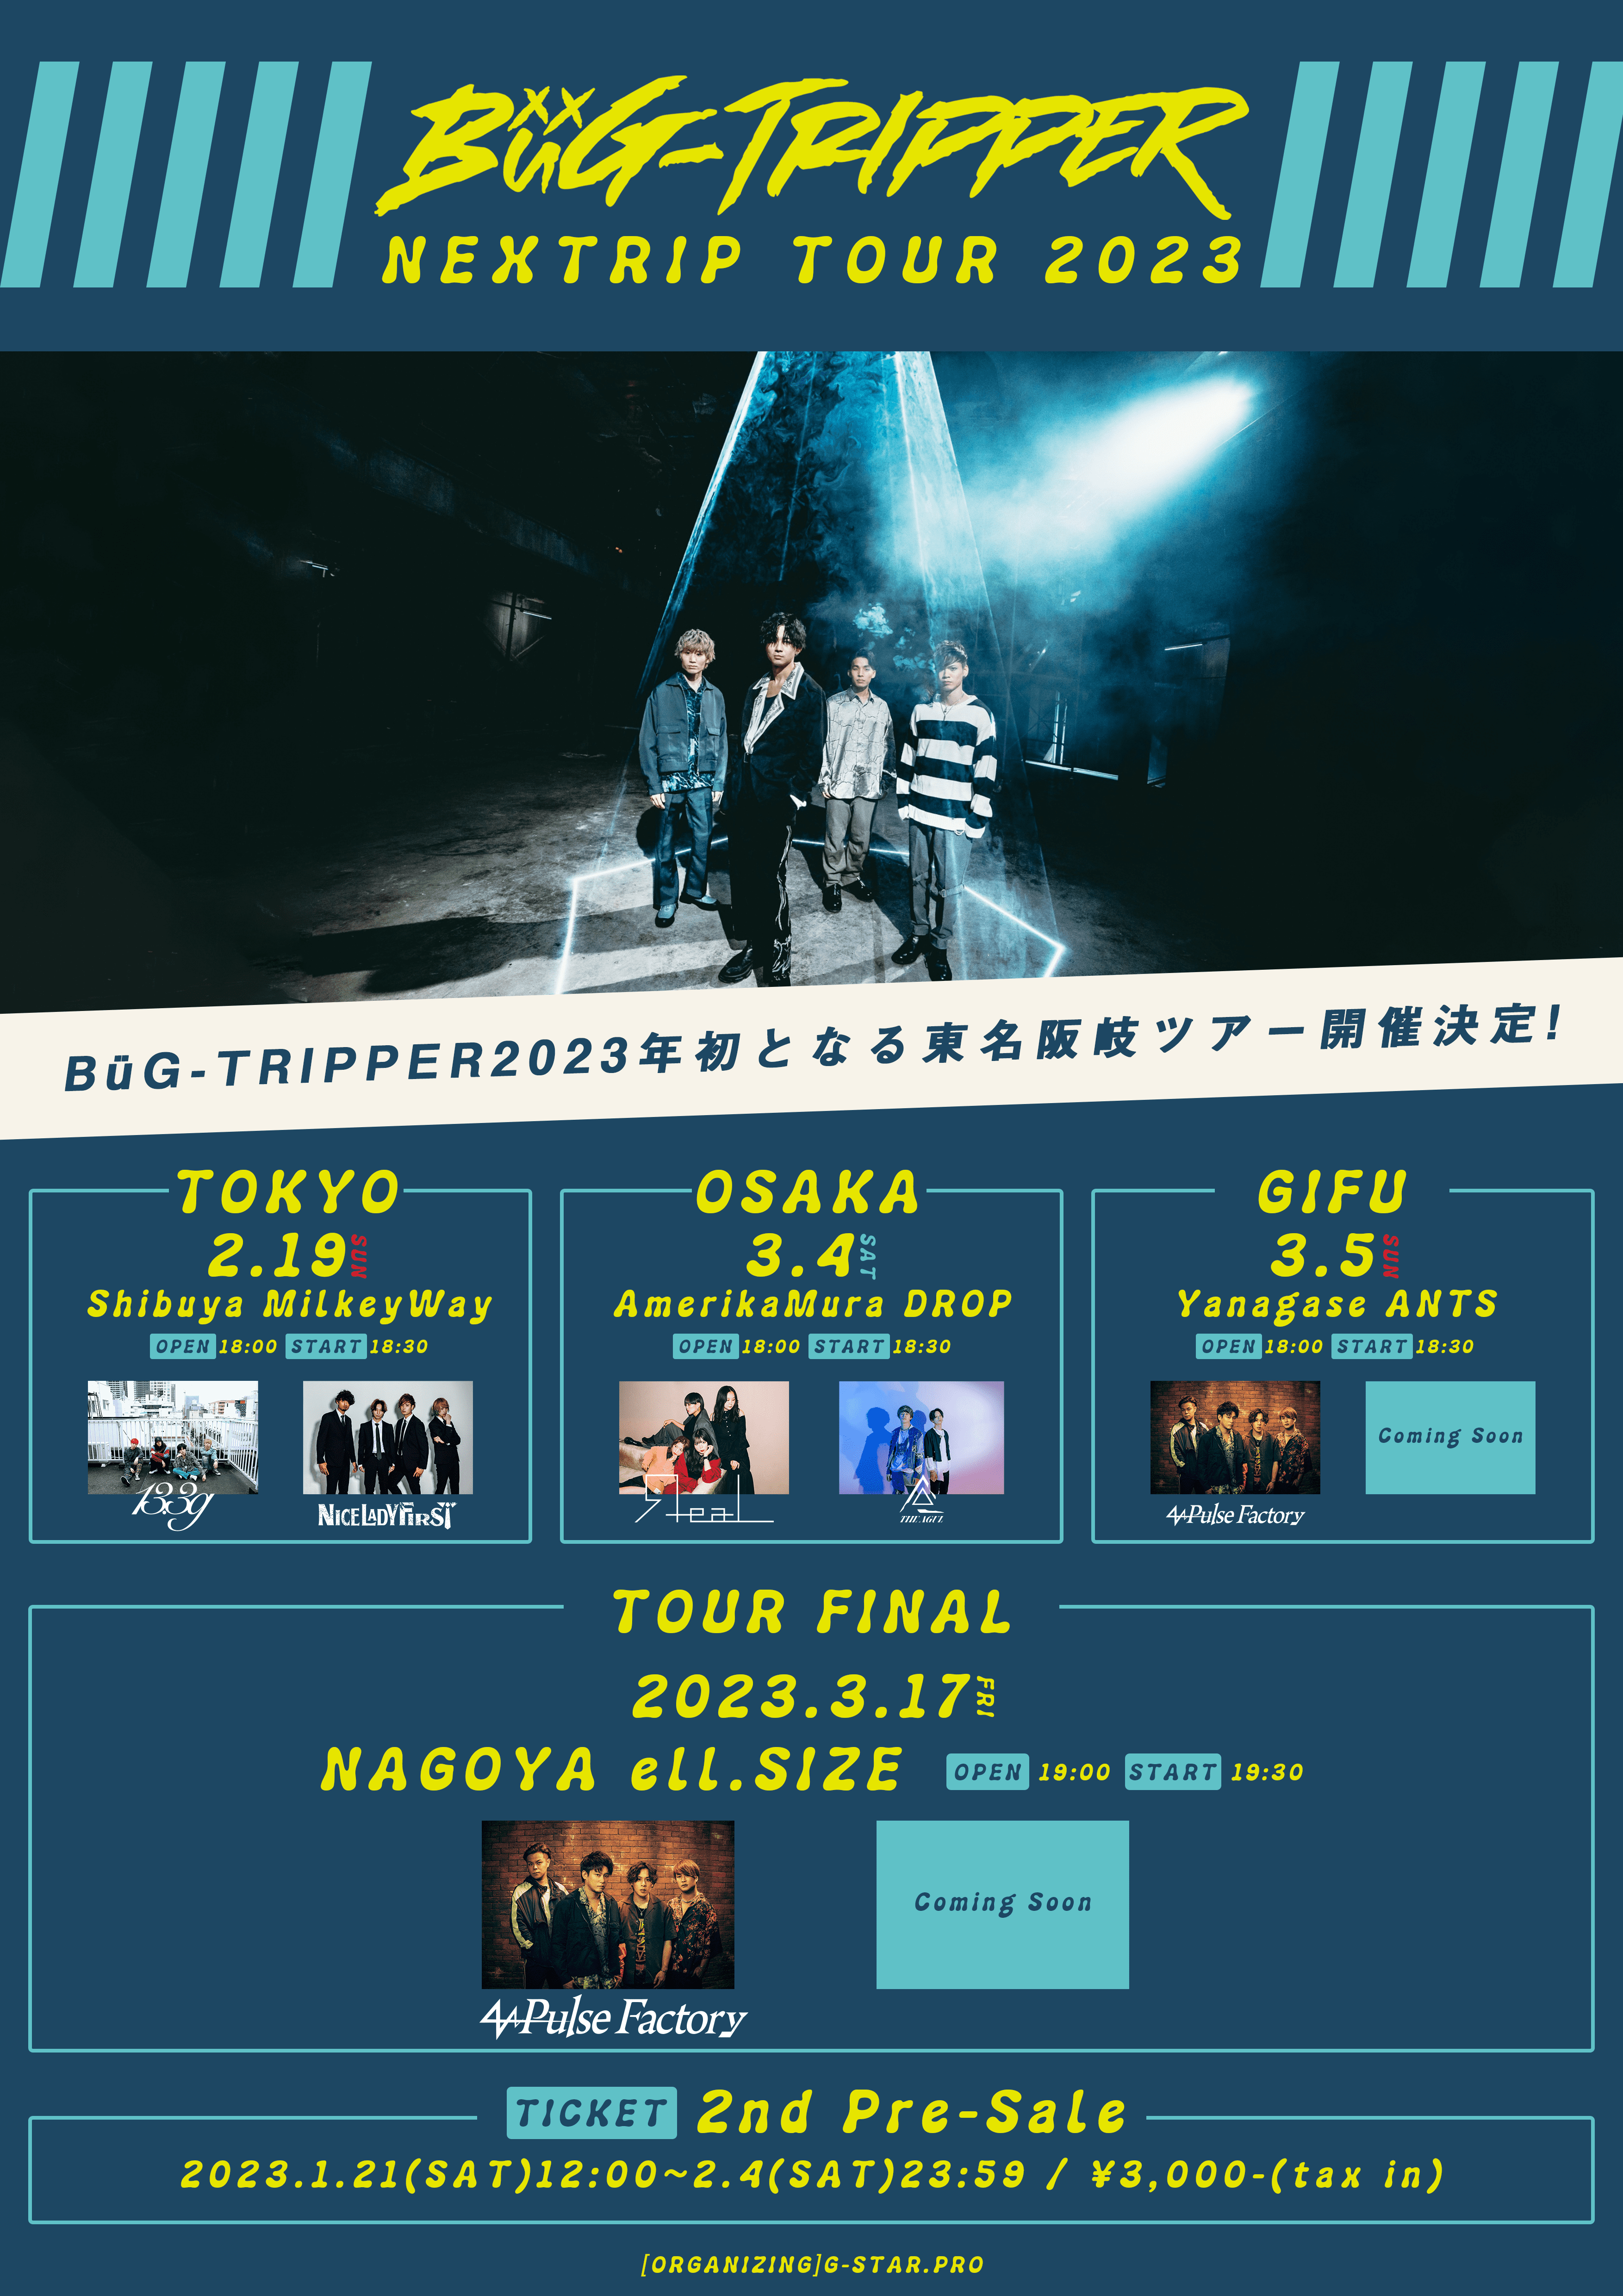 【2次先行】BüG-TRIPPER NEXTRIP TOUR 2023 [大阪公演]